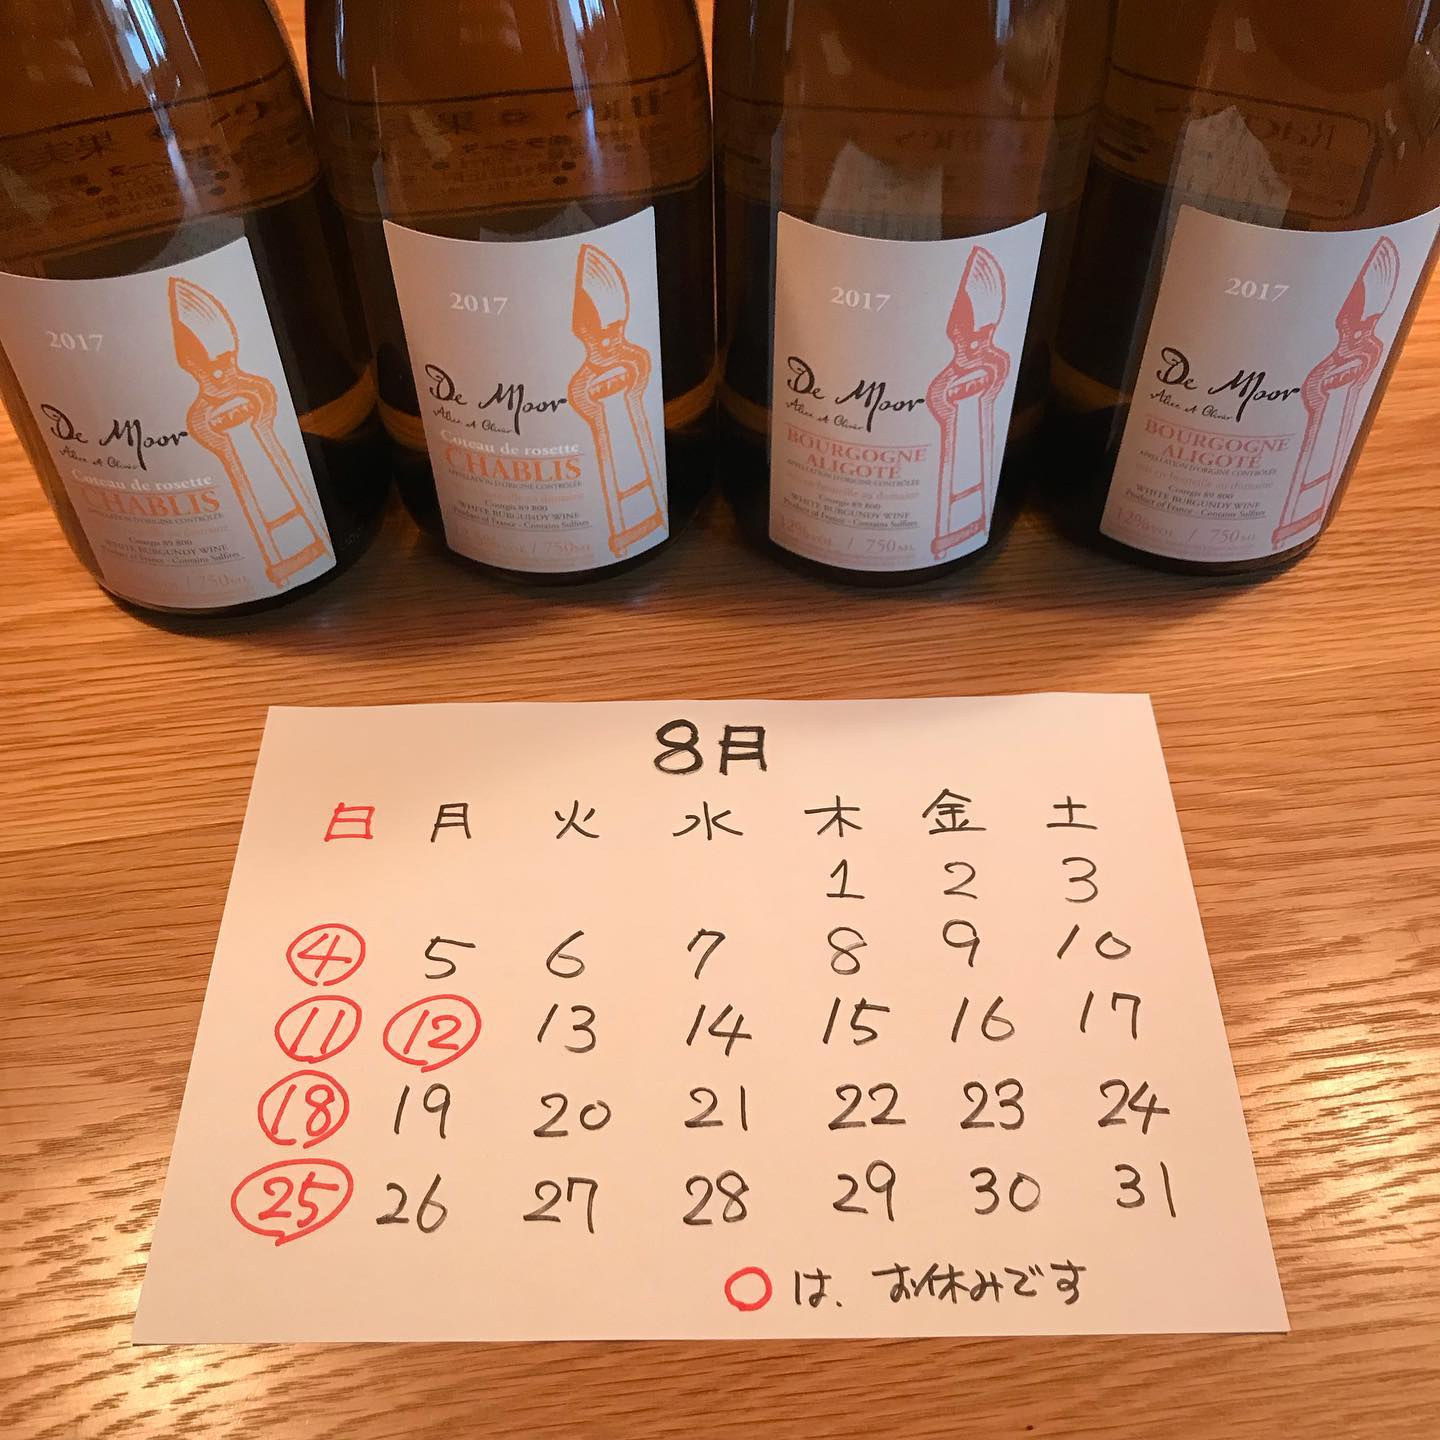 令和元年8月の定休日のお知らせです。4、11、12、18、25日はお休みいただきます。よろしくお願いします。#イルフェソワフ #ワイン#日本酒 #薬院#警固